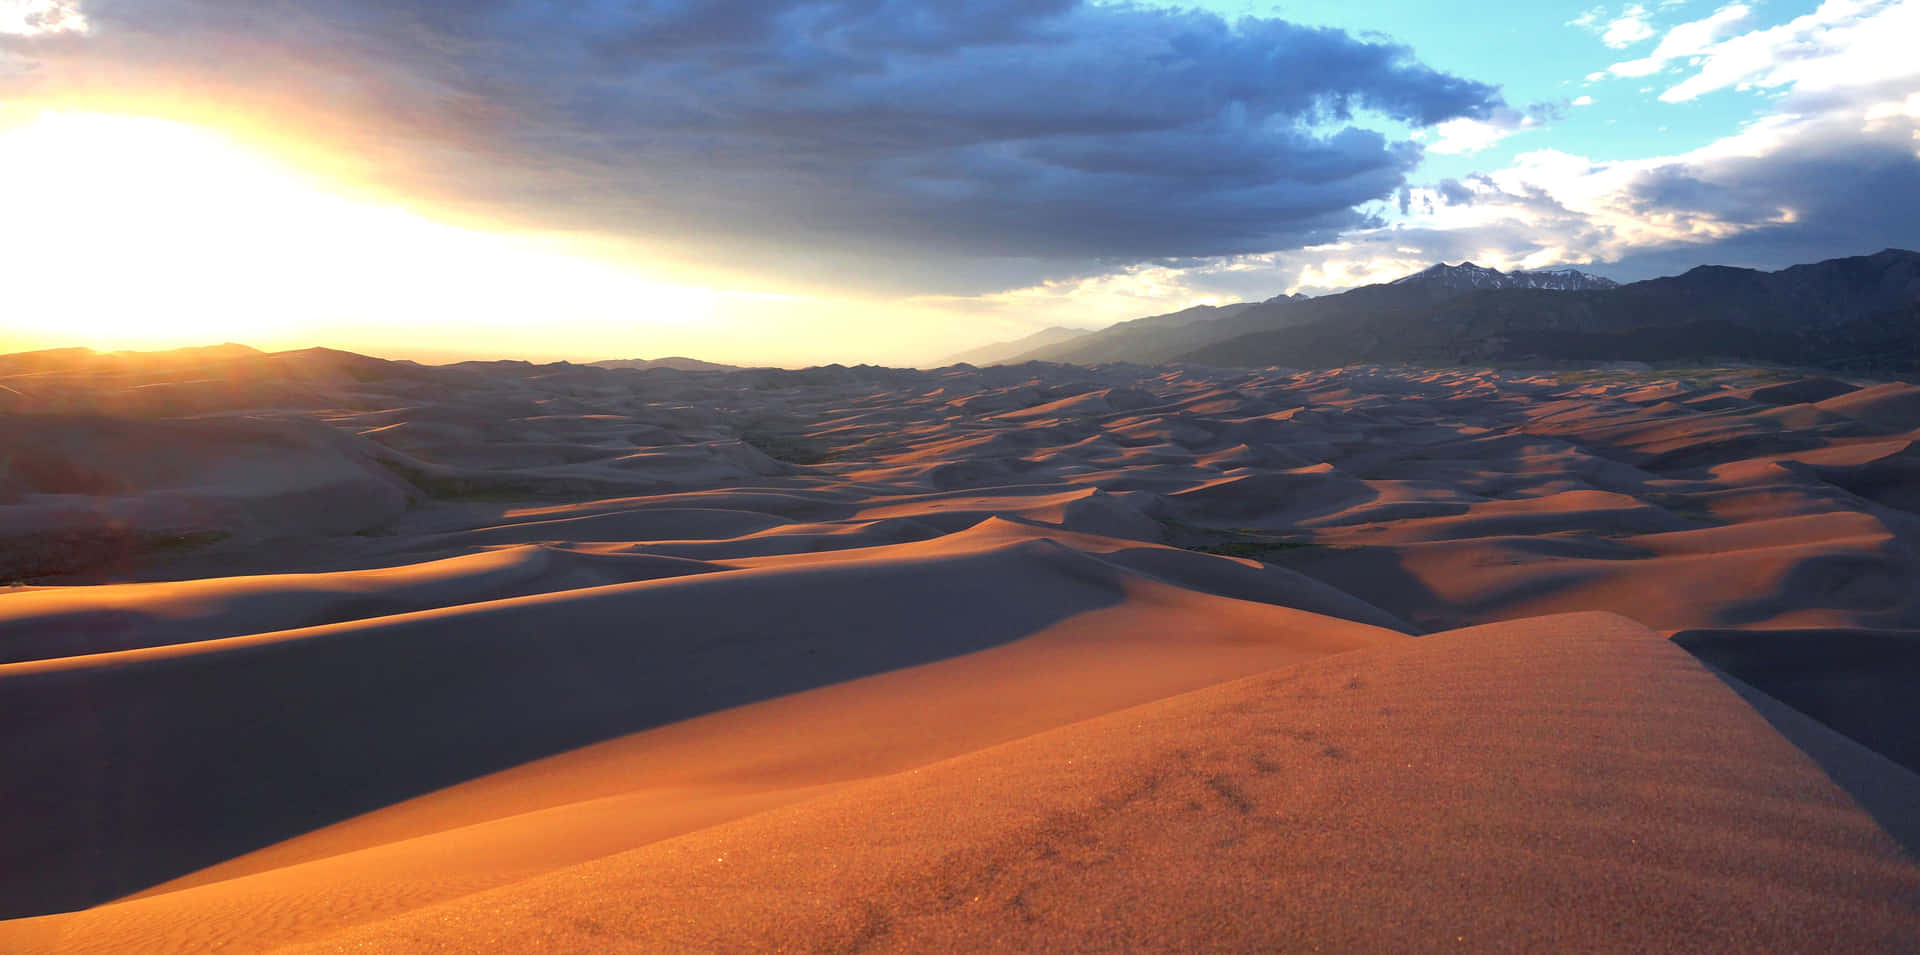 Unavista Impresionante Del Desierto En El Planeta Arrakis